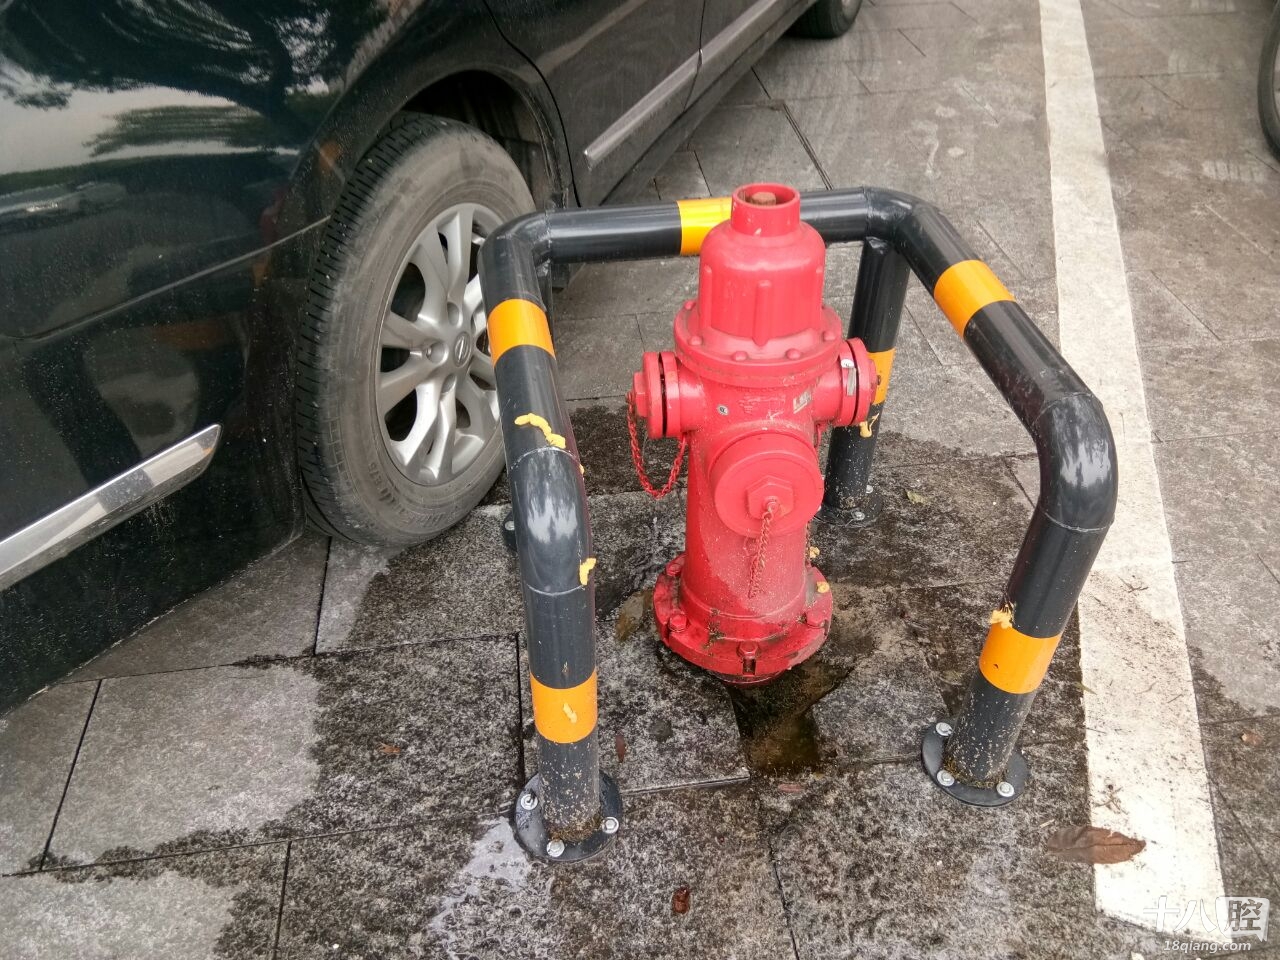 这个消防栓一直在漏水,有关部门在哪